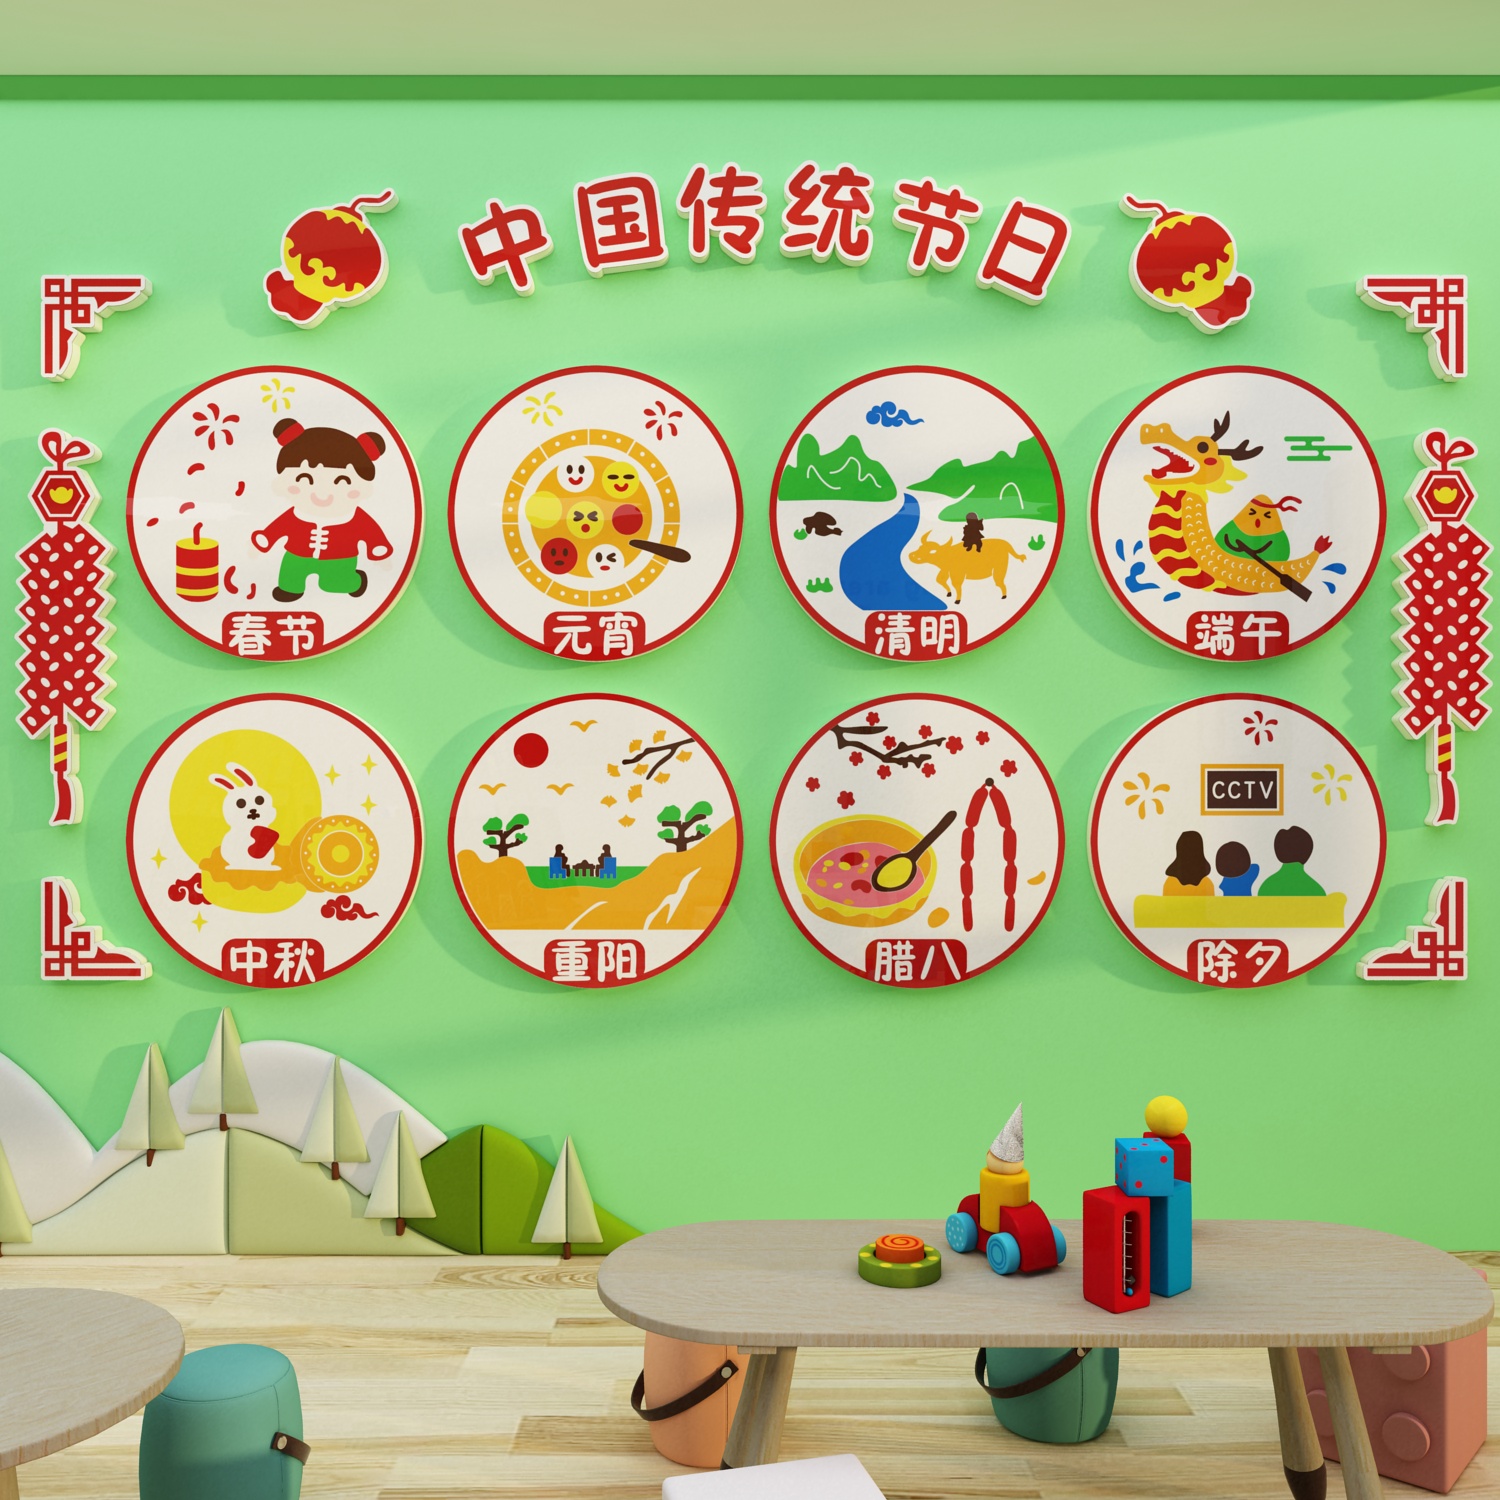 幼儿园中秋国传统节日主题文化成品墙面装饰教室环创布置材料贴画